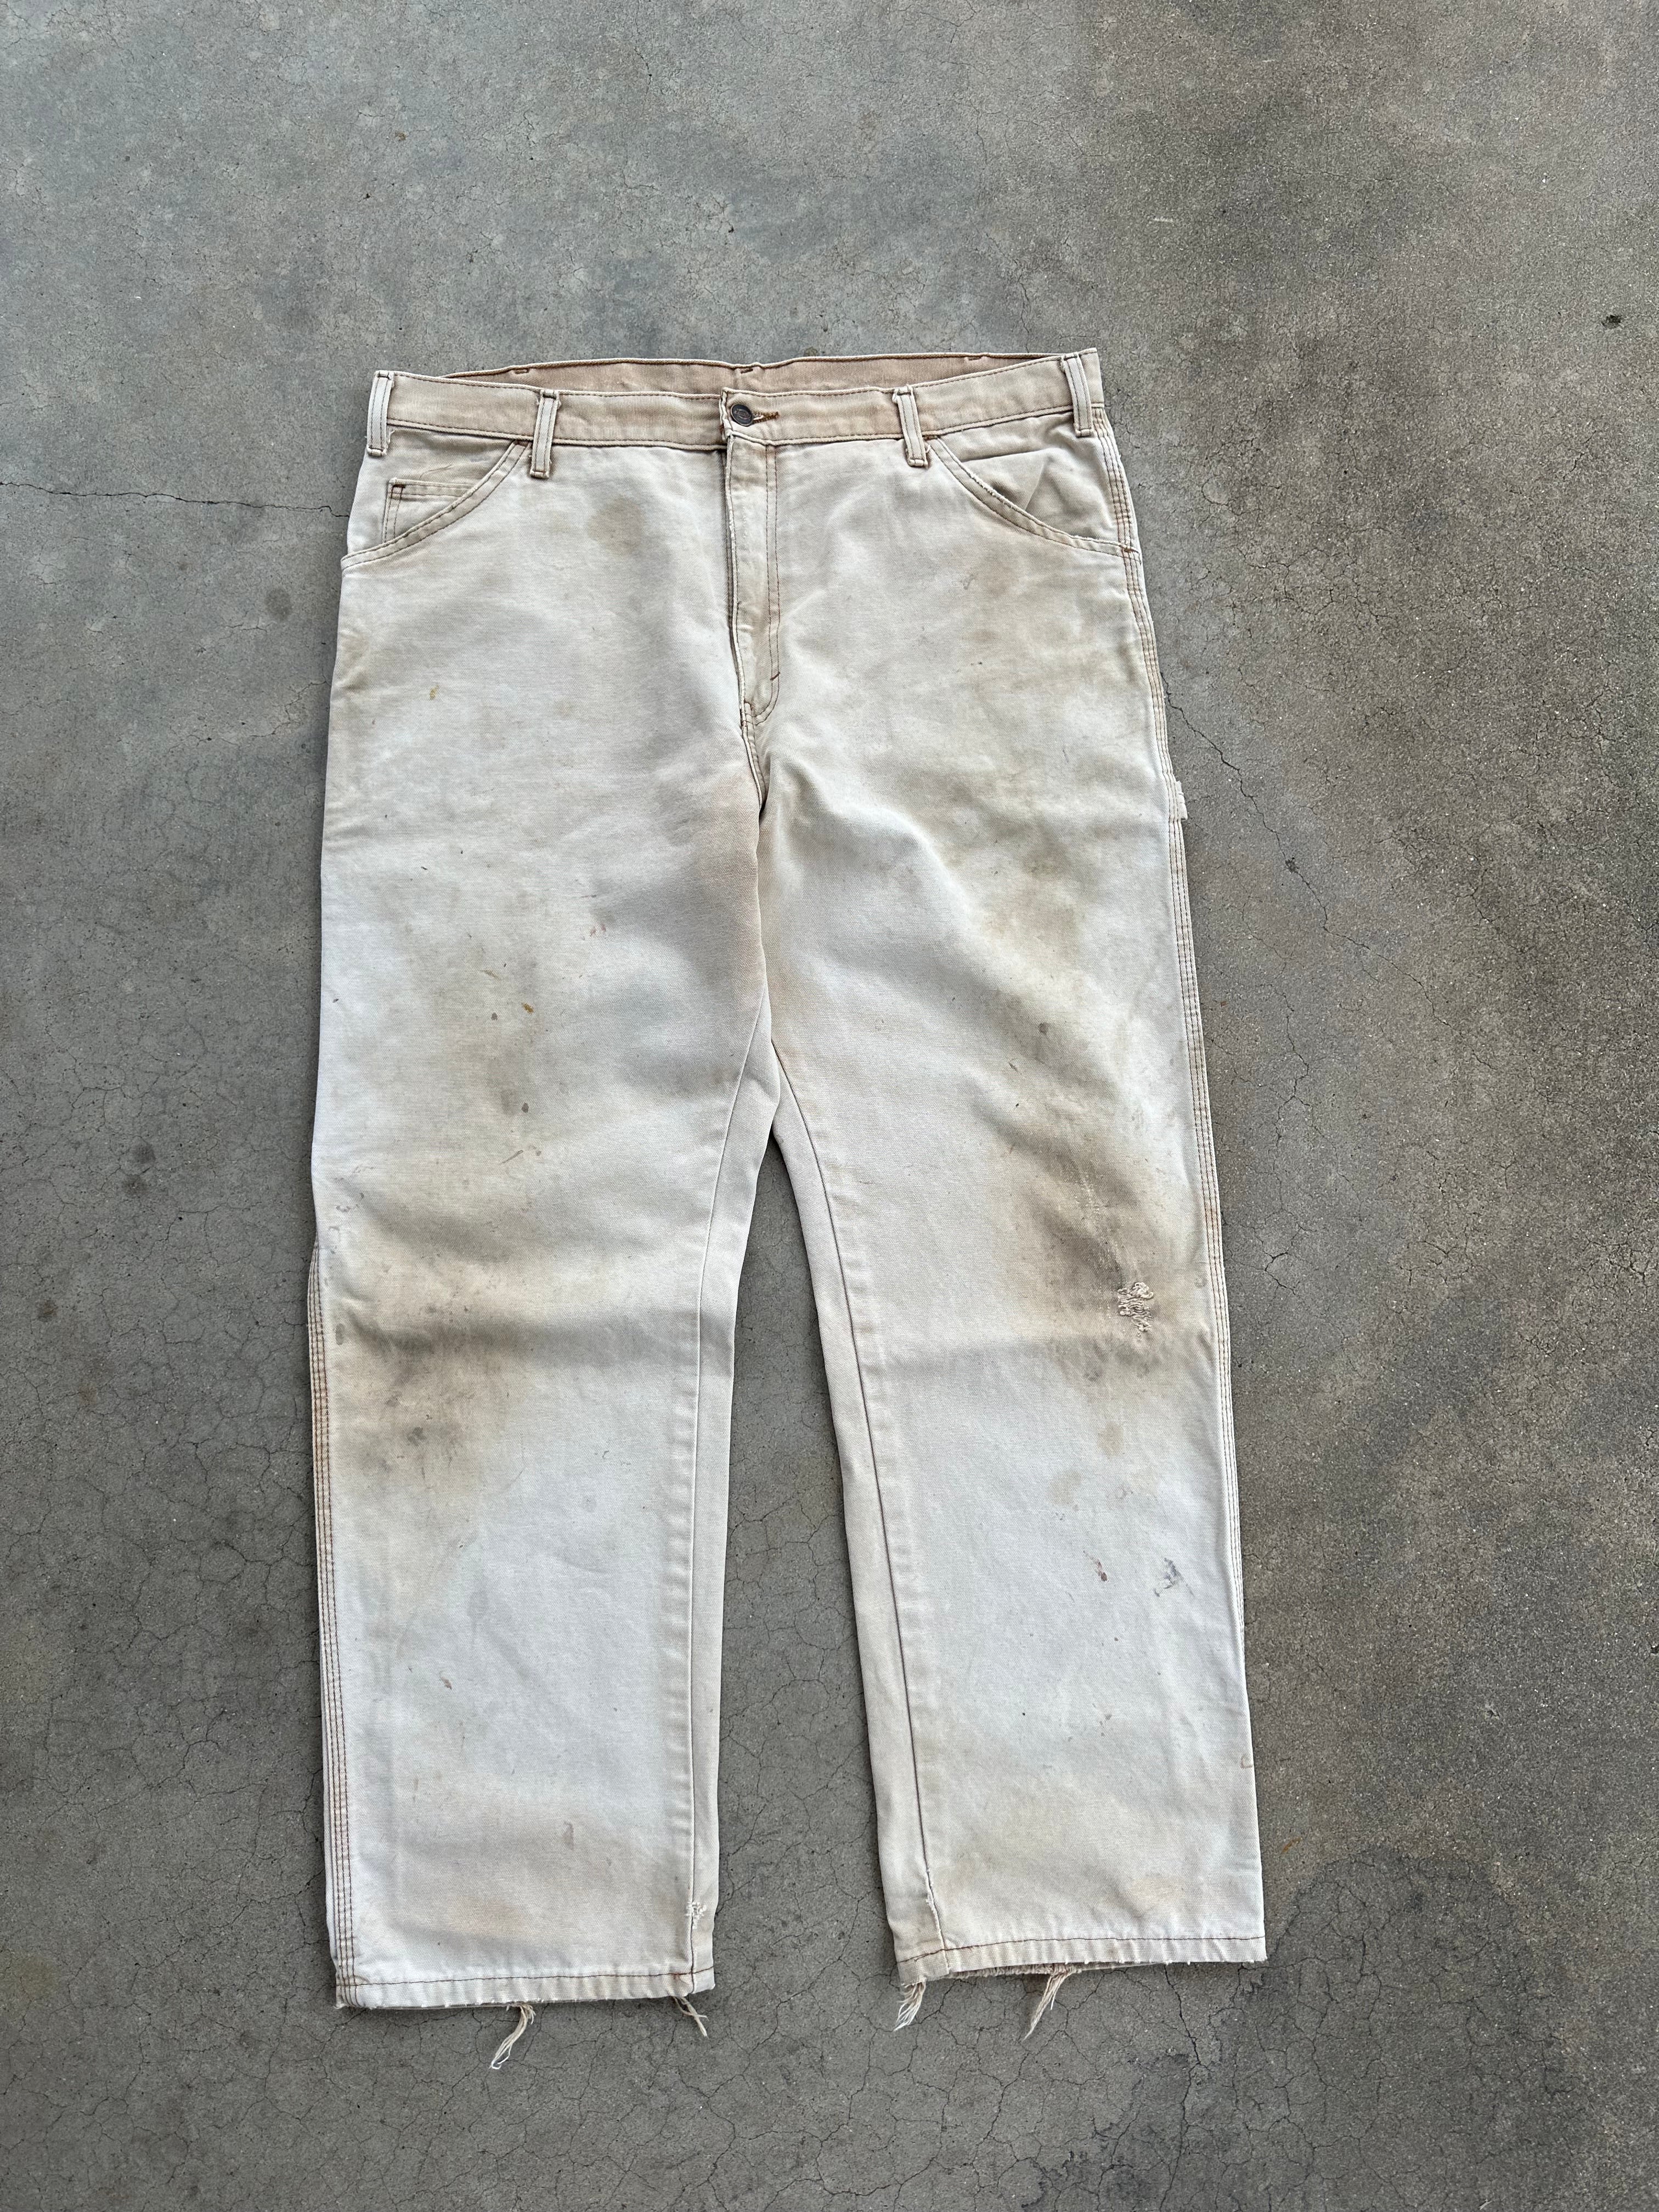 Vintage Faded/Worn Dickies Carpenter Pants (37"x29.5")